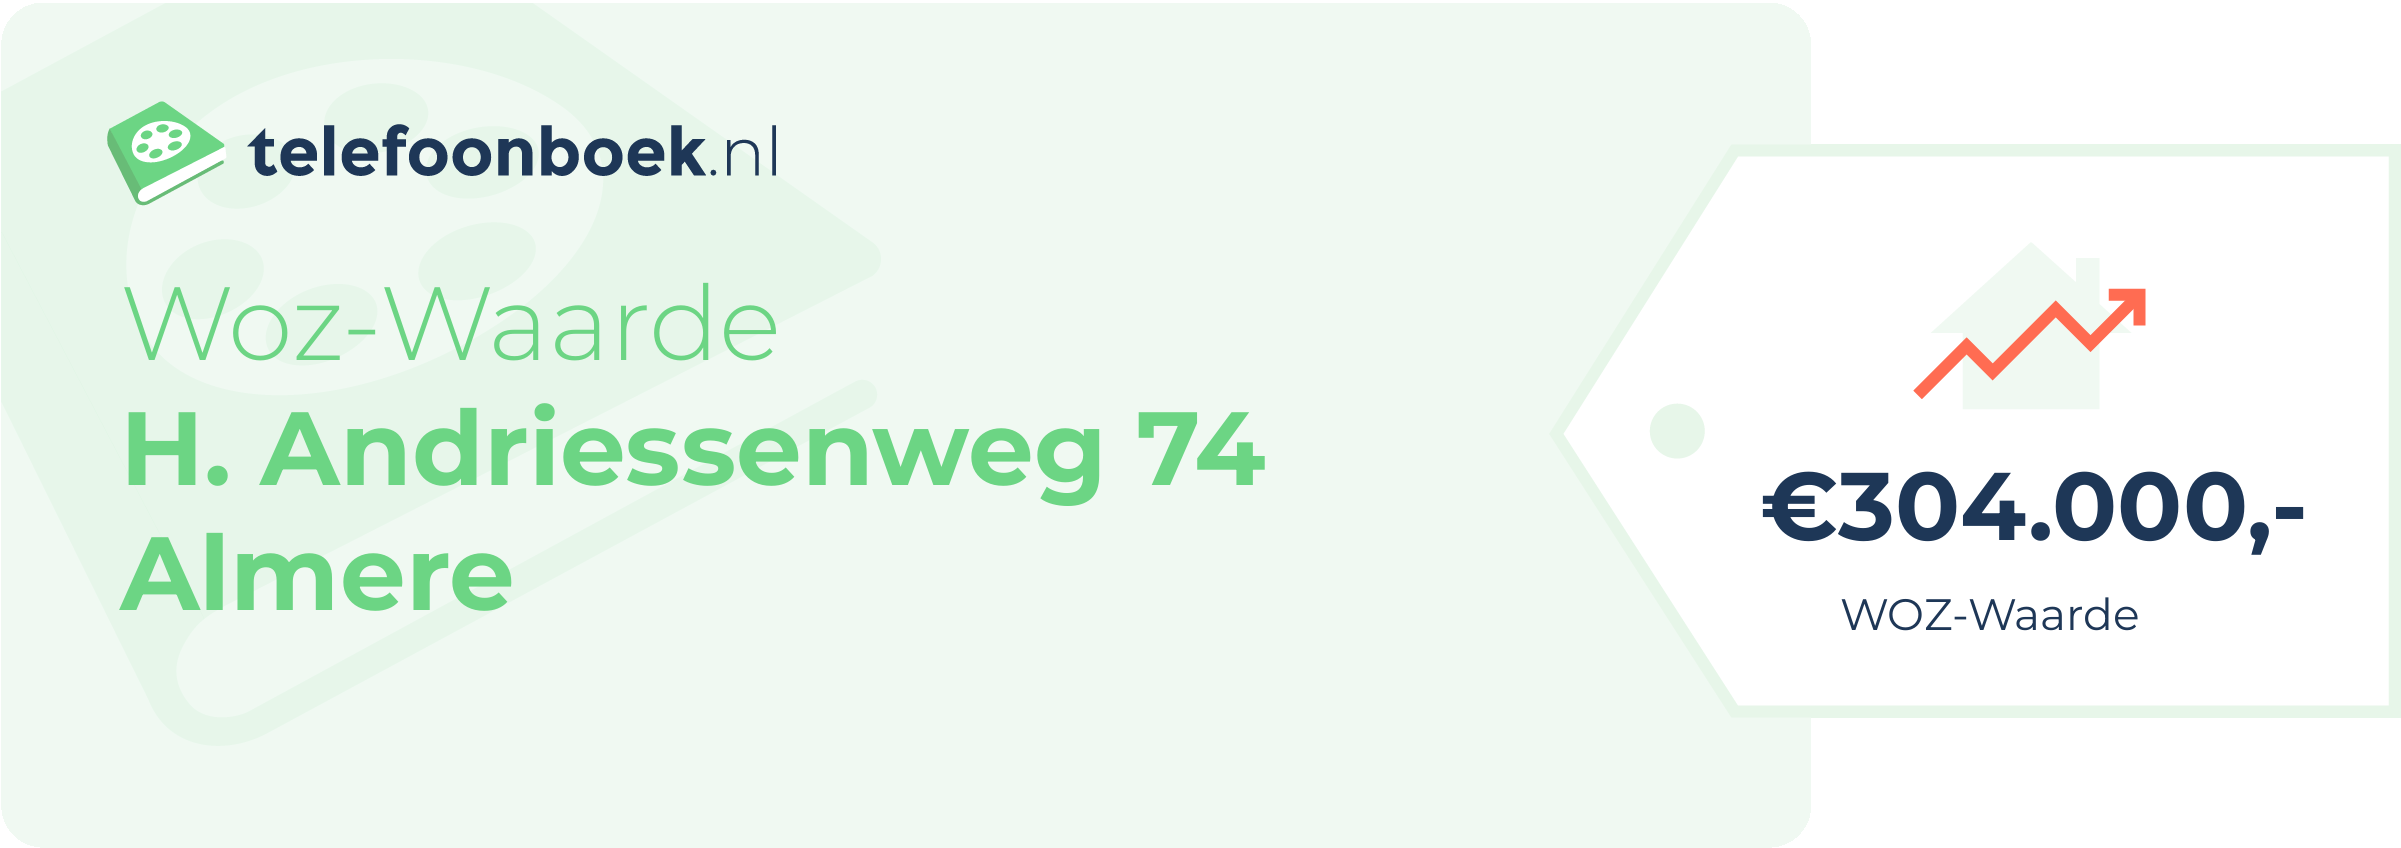 WOZ-waarde H. Andriessenweg 74 Almere